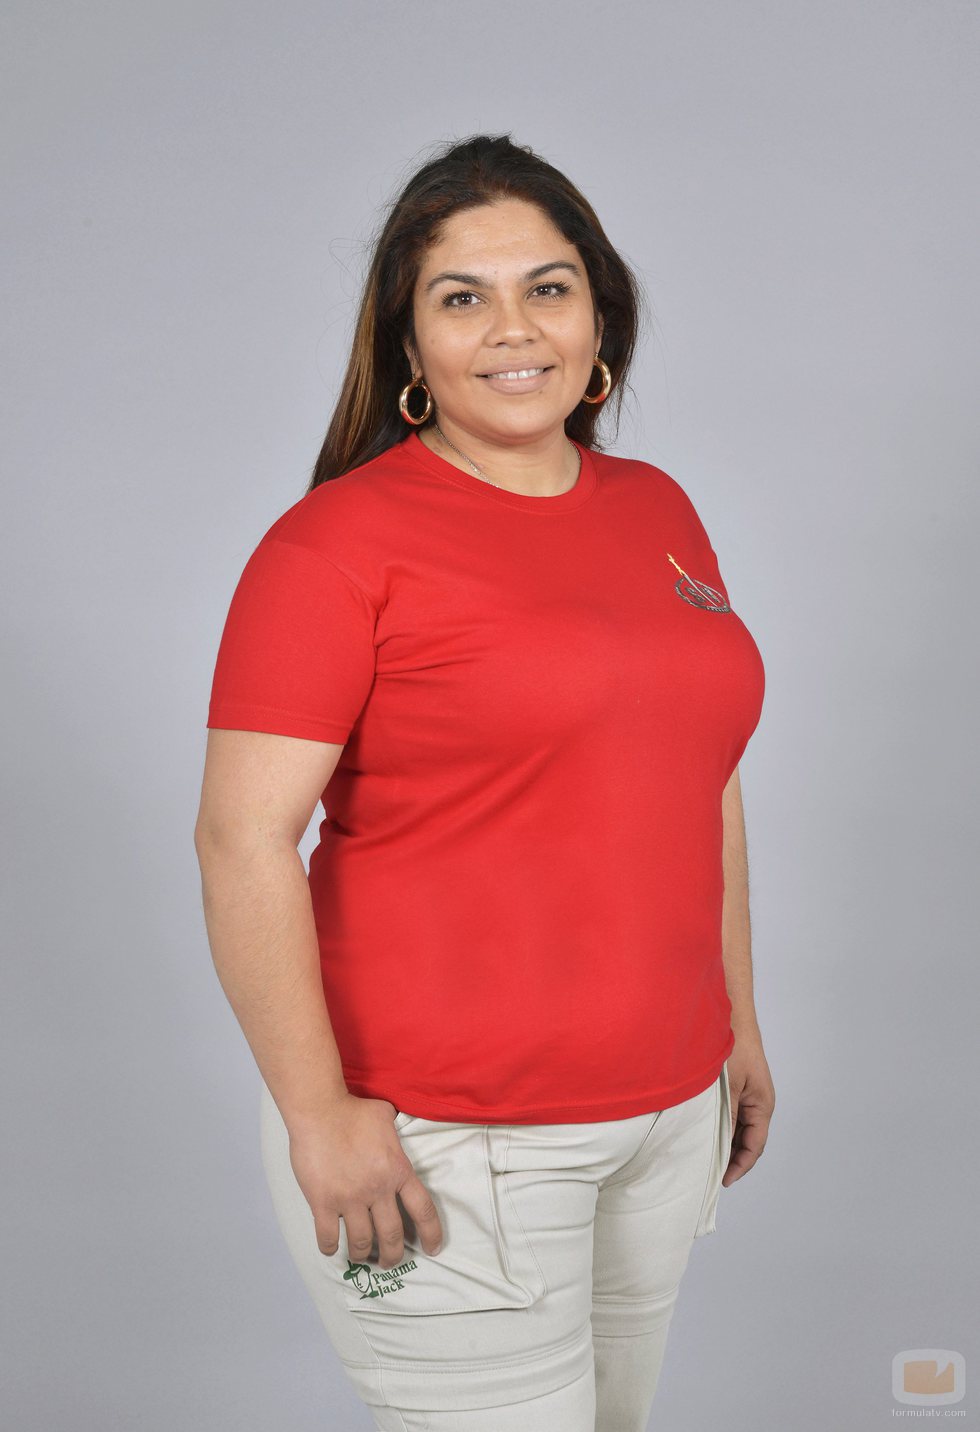 Saray Montoya como concursante de 'Supervivientes 2018'